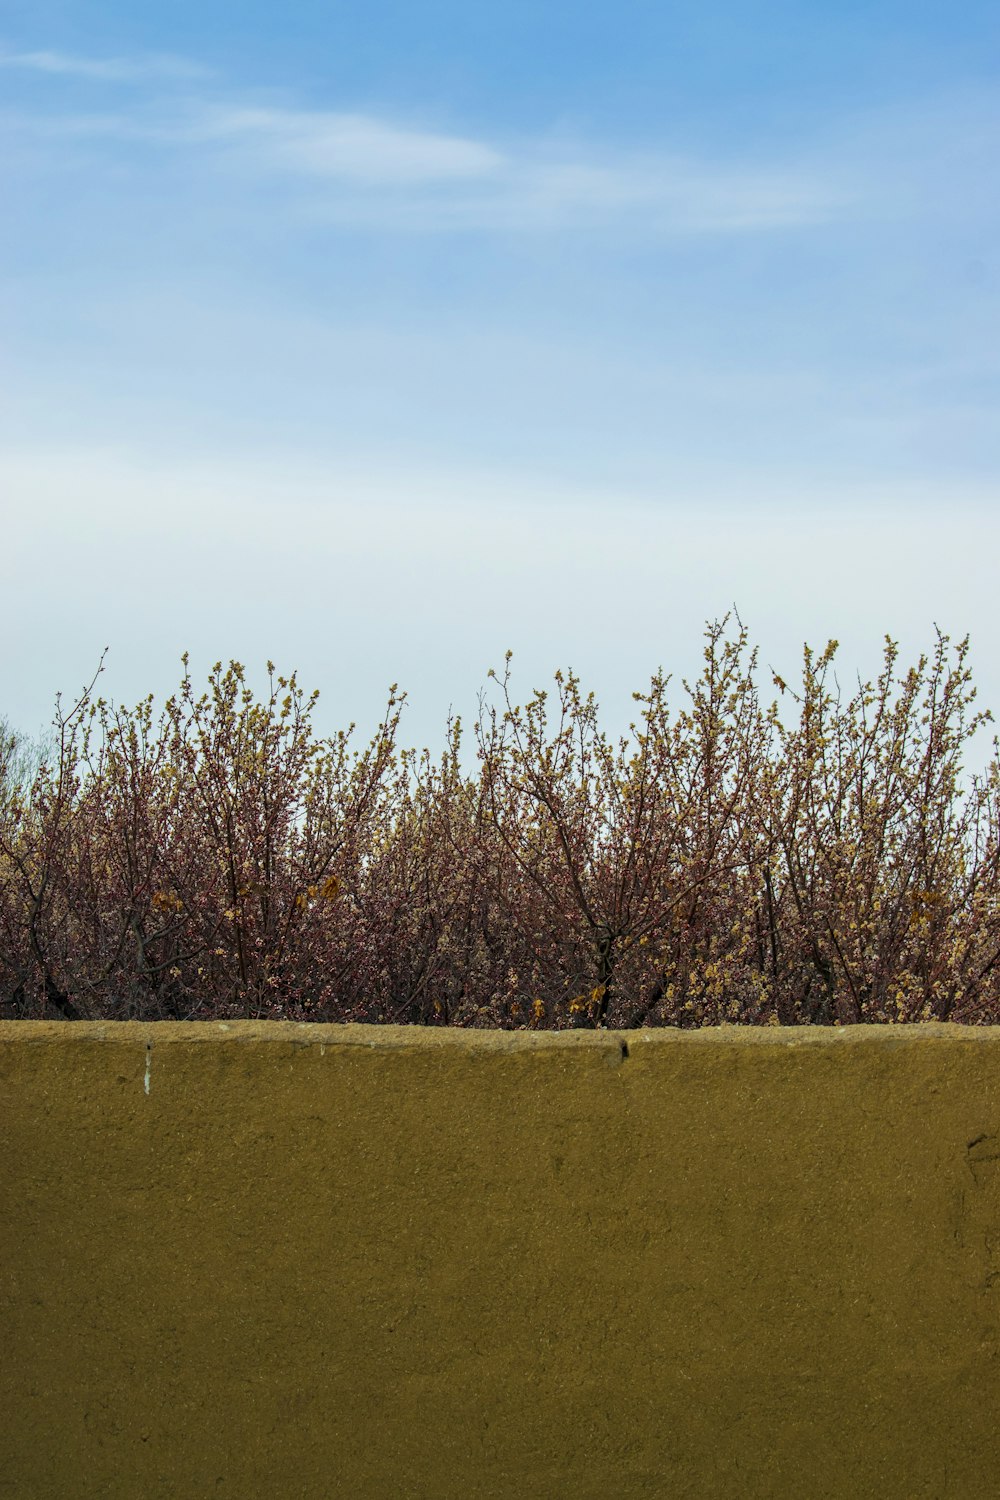 a bird is sitting on a ledge near a bush